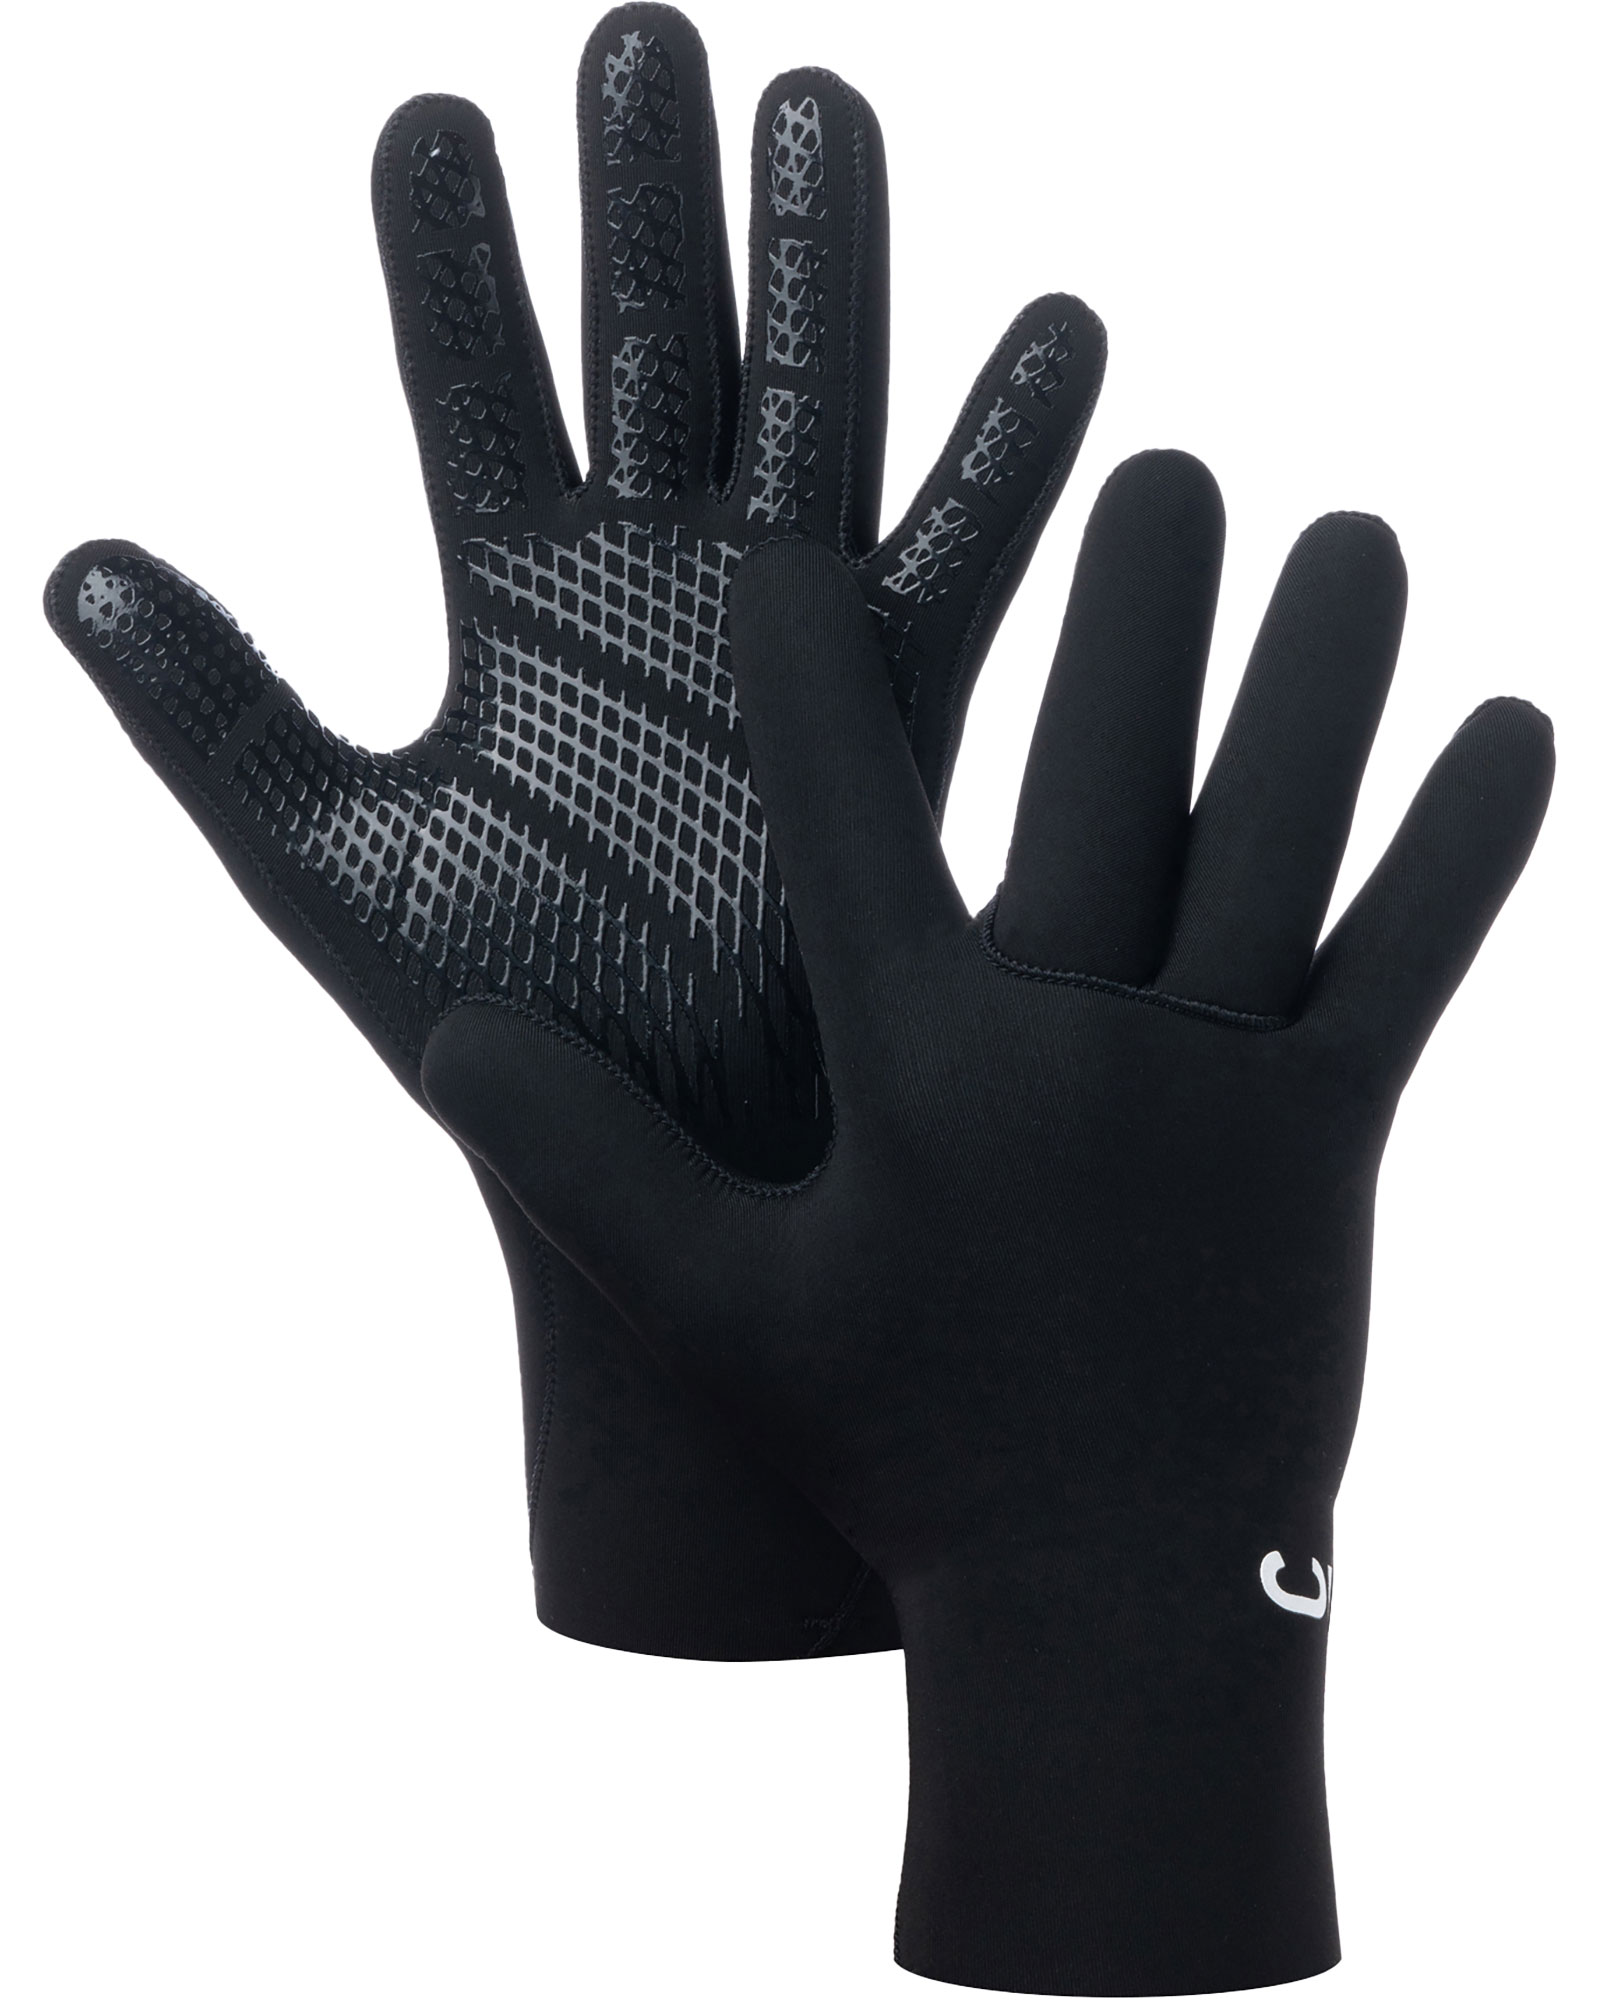 C-Skins Legend 3mm Adults Gloves